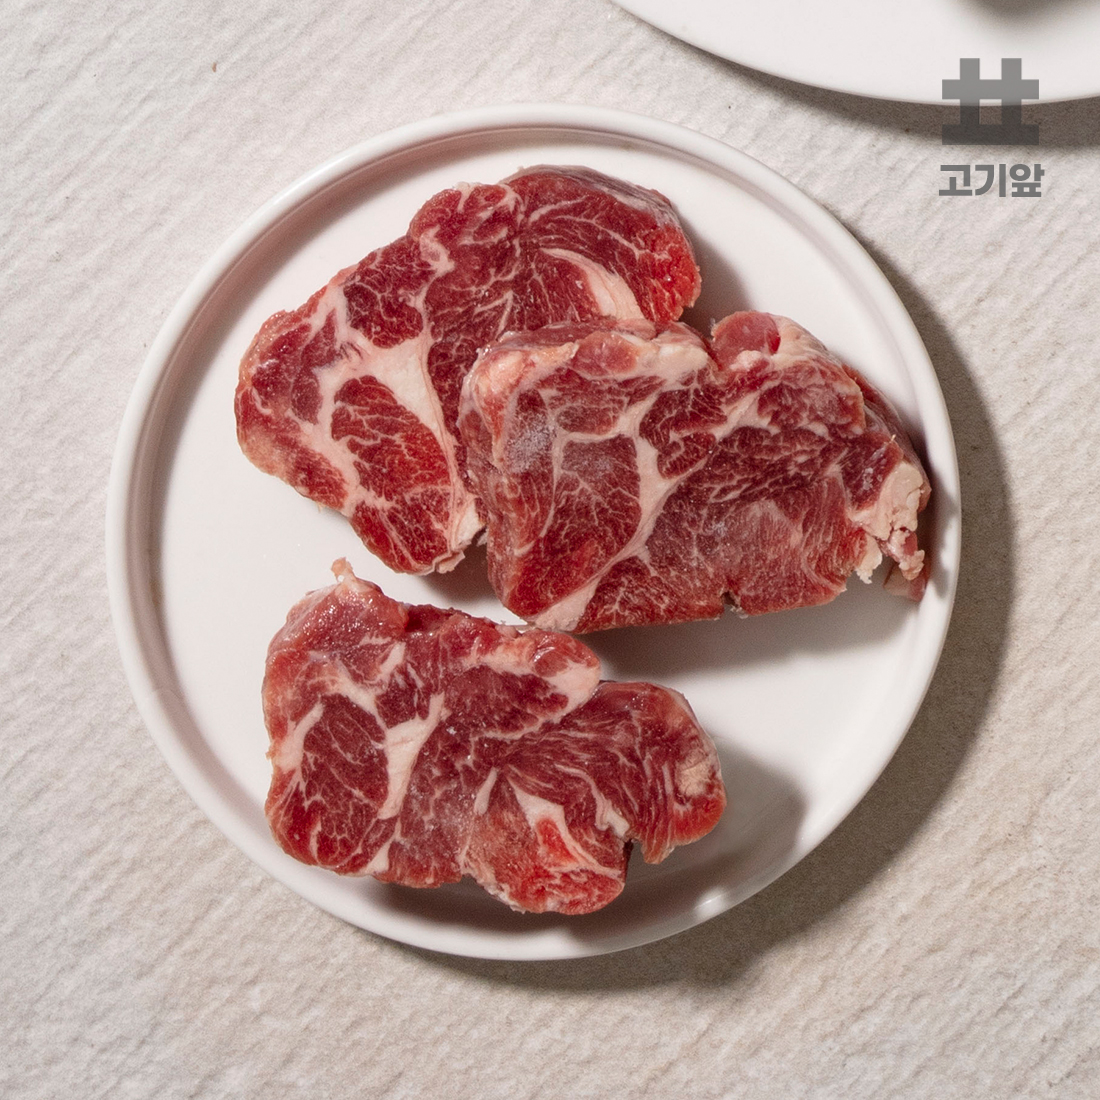 [고기앞] 그랜드하얏트/라무*납품 호주산 5-9개월 미만 숙성 양고기  양등심(슬라이스) 500g+쯔란